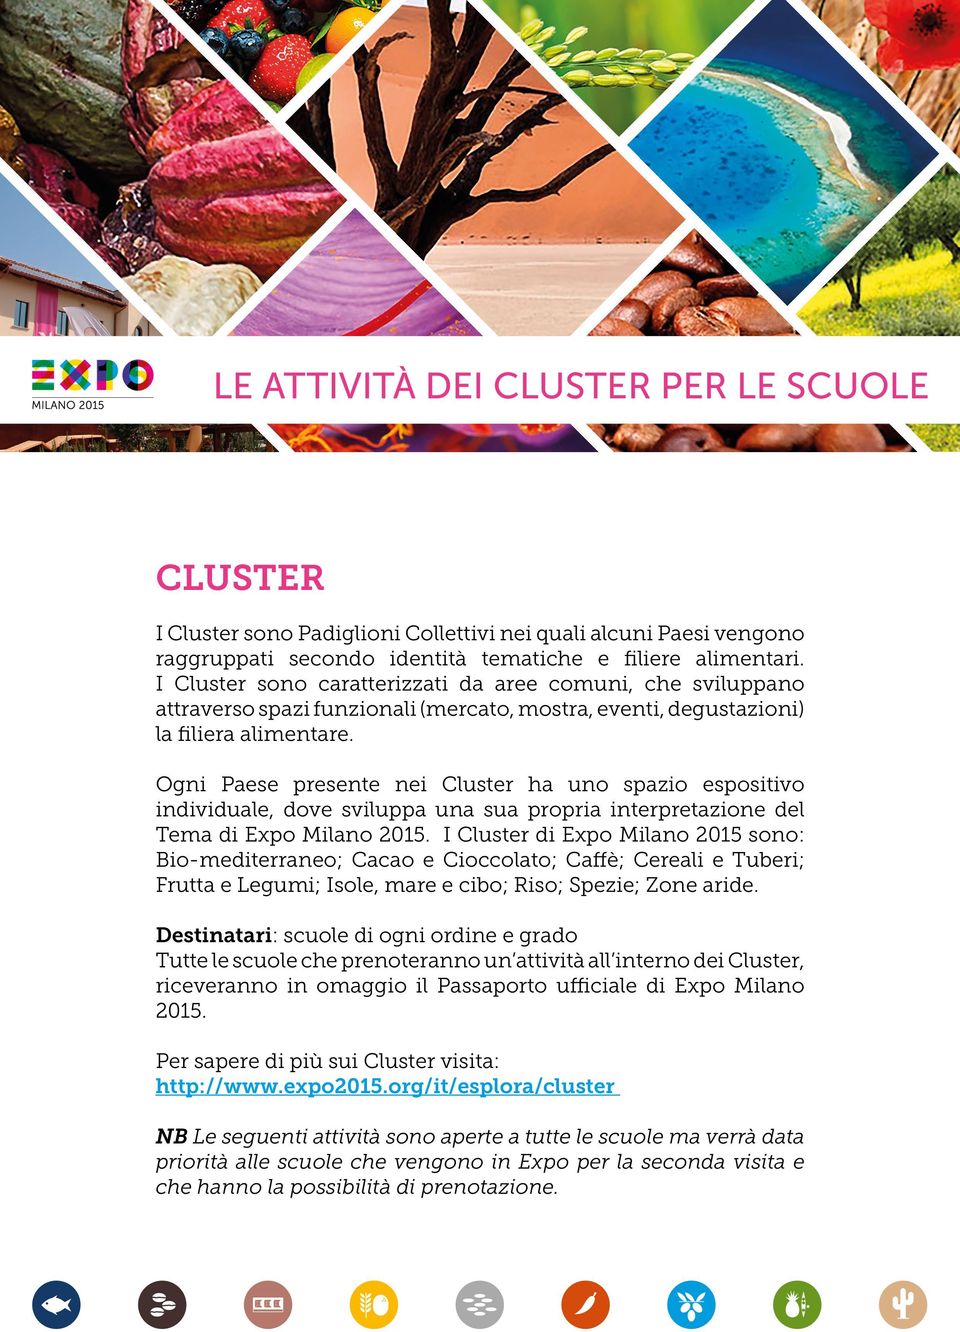 Ogni Paese presente nei Cluster ha uno spazio espositivo individuale, dove sviluppa una sua propria interpretazione del Tema di Expo Milano 2015.